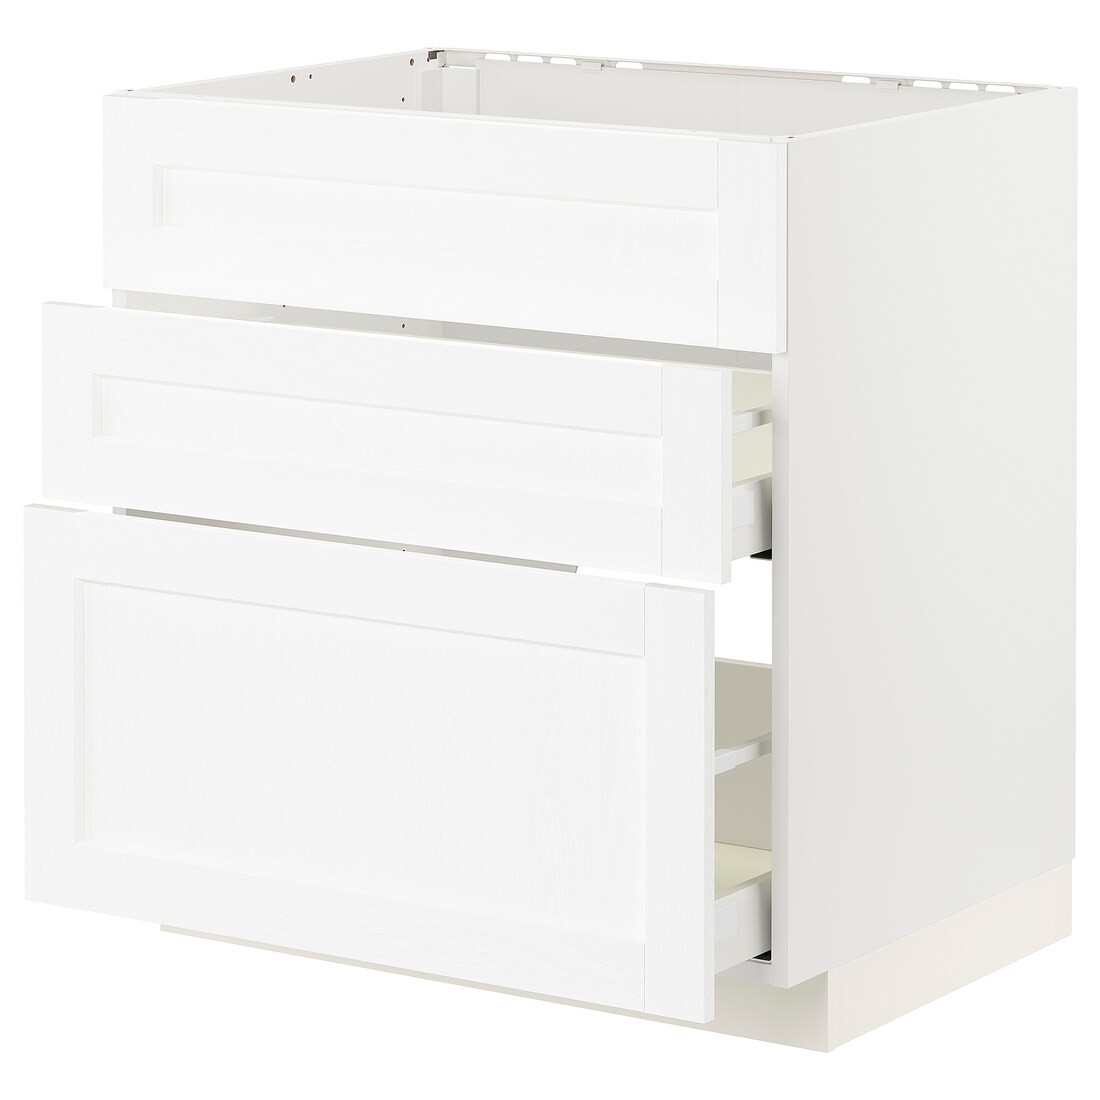 METOD МЕТОД / MAXIMERA МАКСИМЕРА Напольный шкаф для варочной панели / вытяжка с ящиком, белый Enköping / белый имитация дерева, 80x60 см